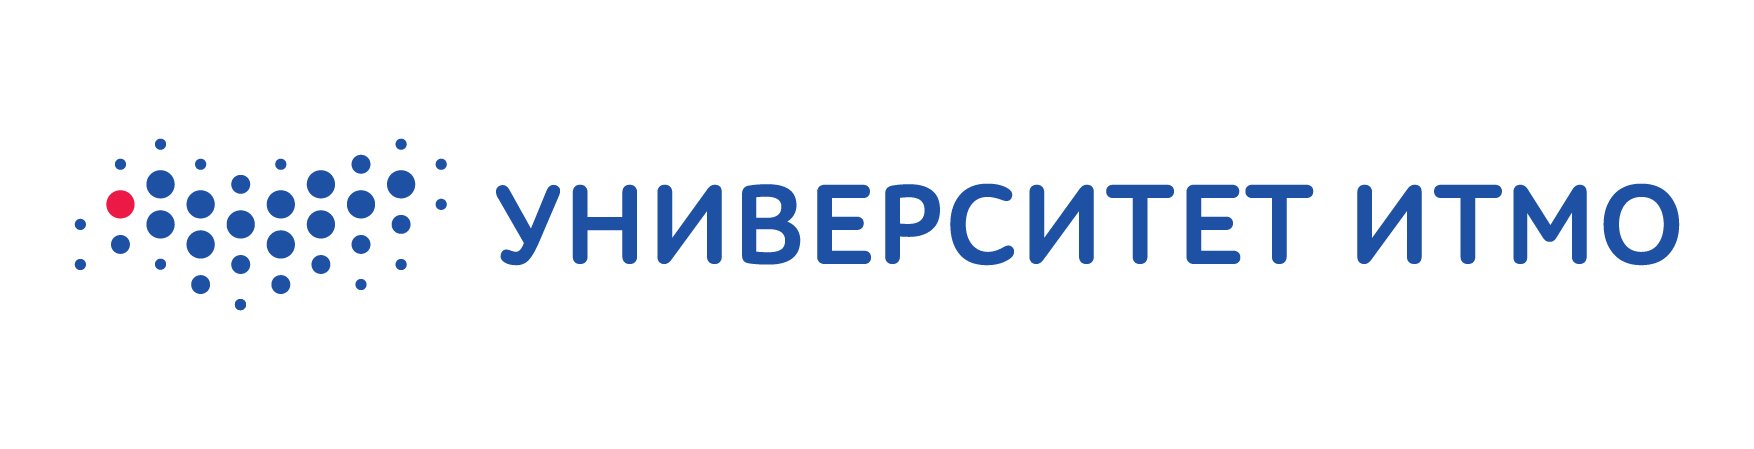 Университет ИТМО В Санкт-Петербурге логотип